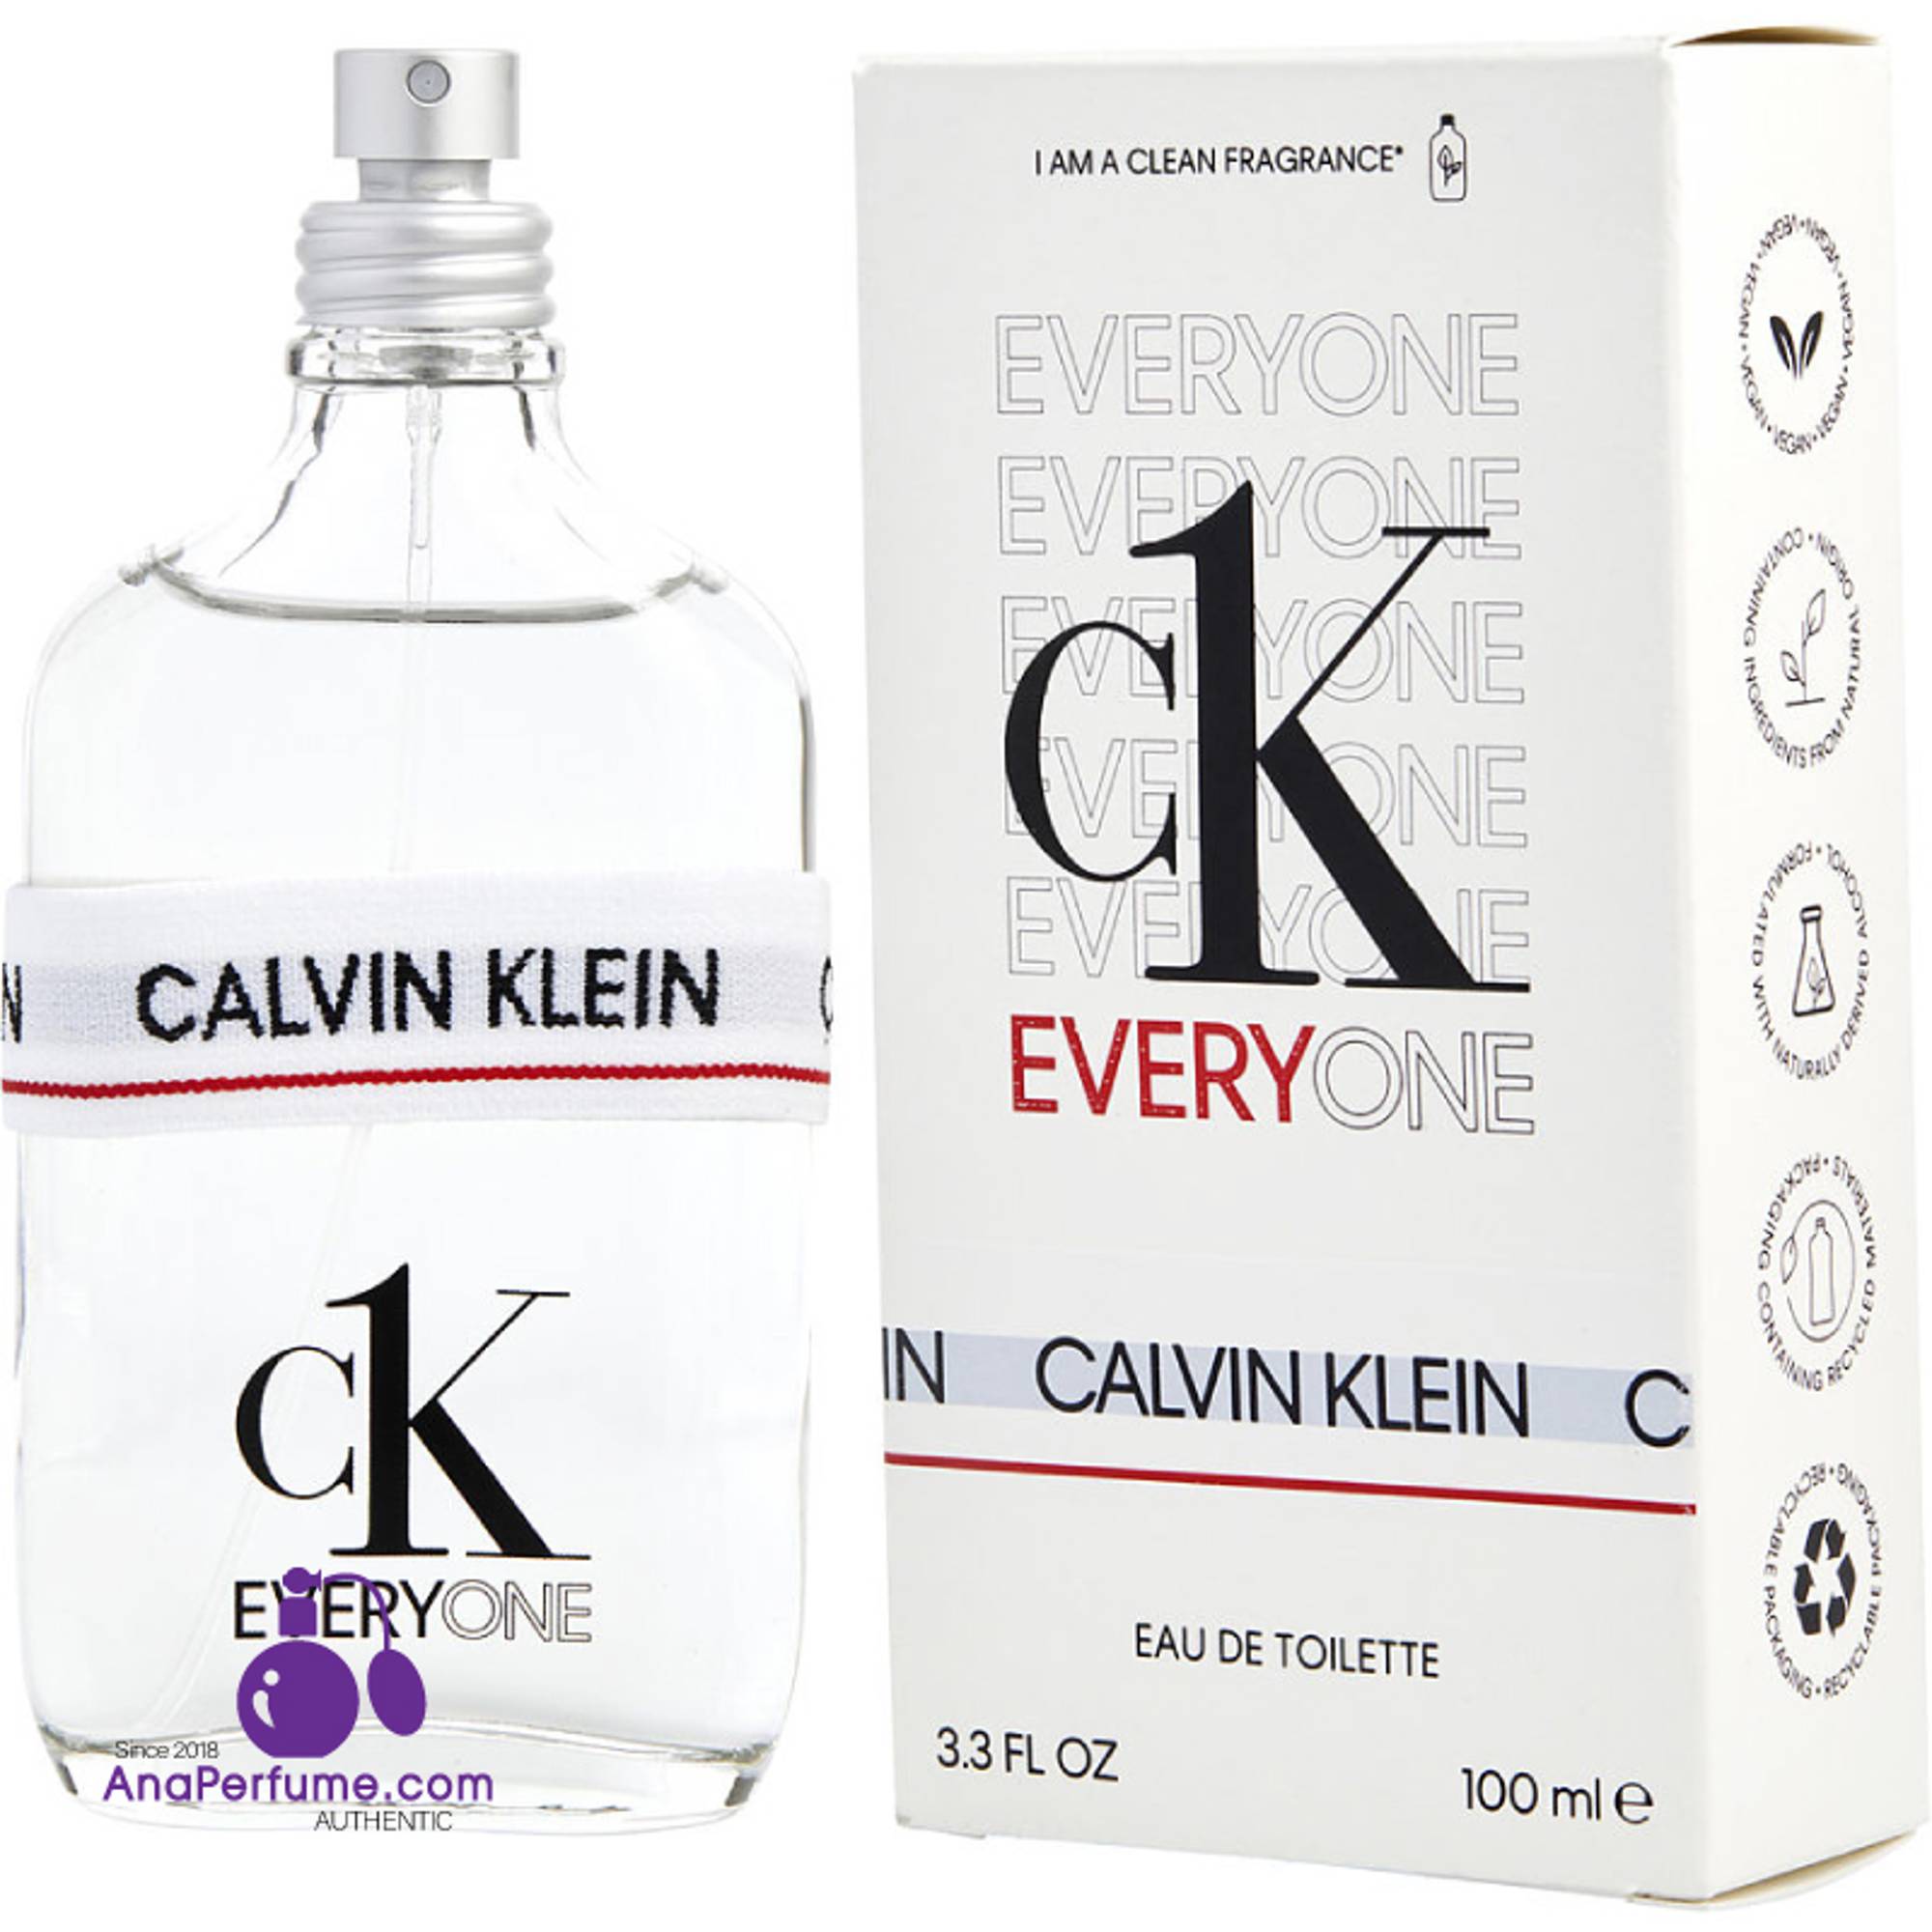 Nước hoa nam - nữ CK Everyone EDT 100ml Calvin Klein chính hãng